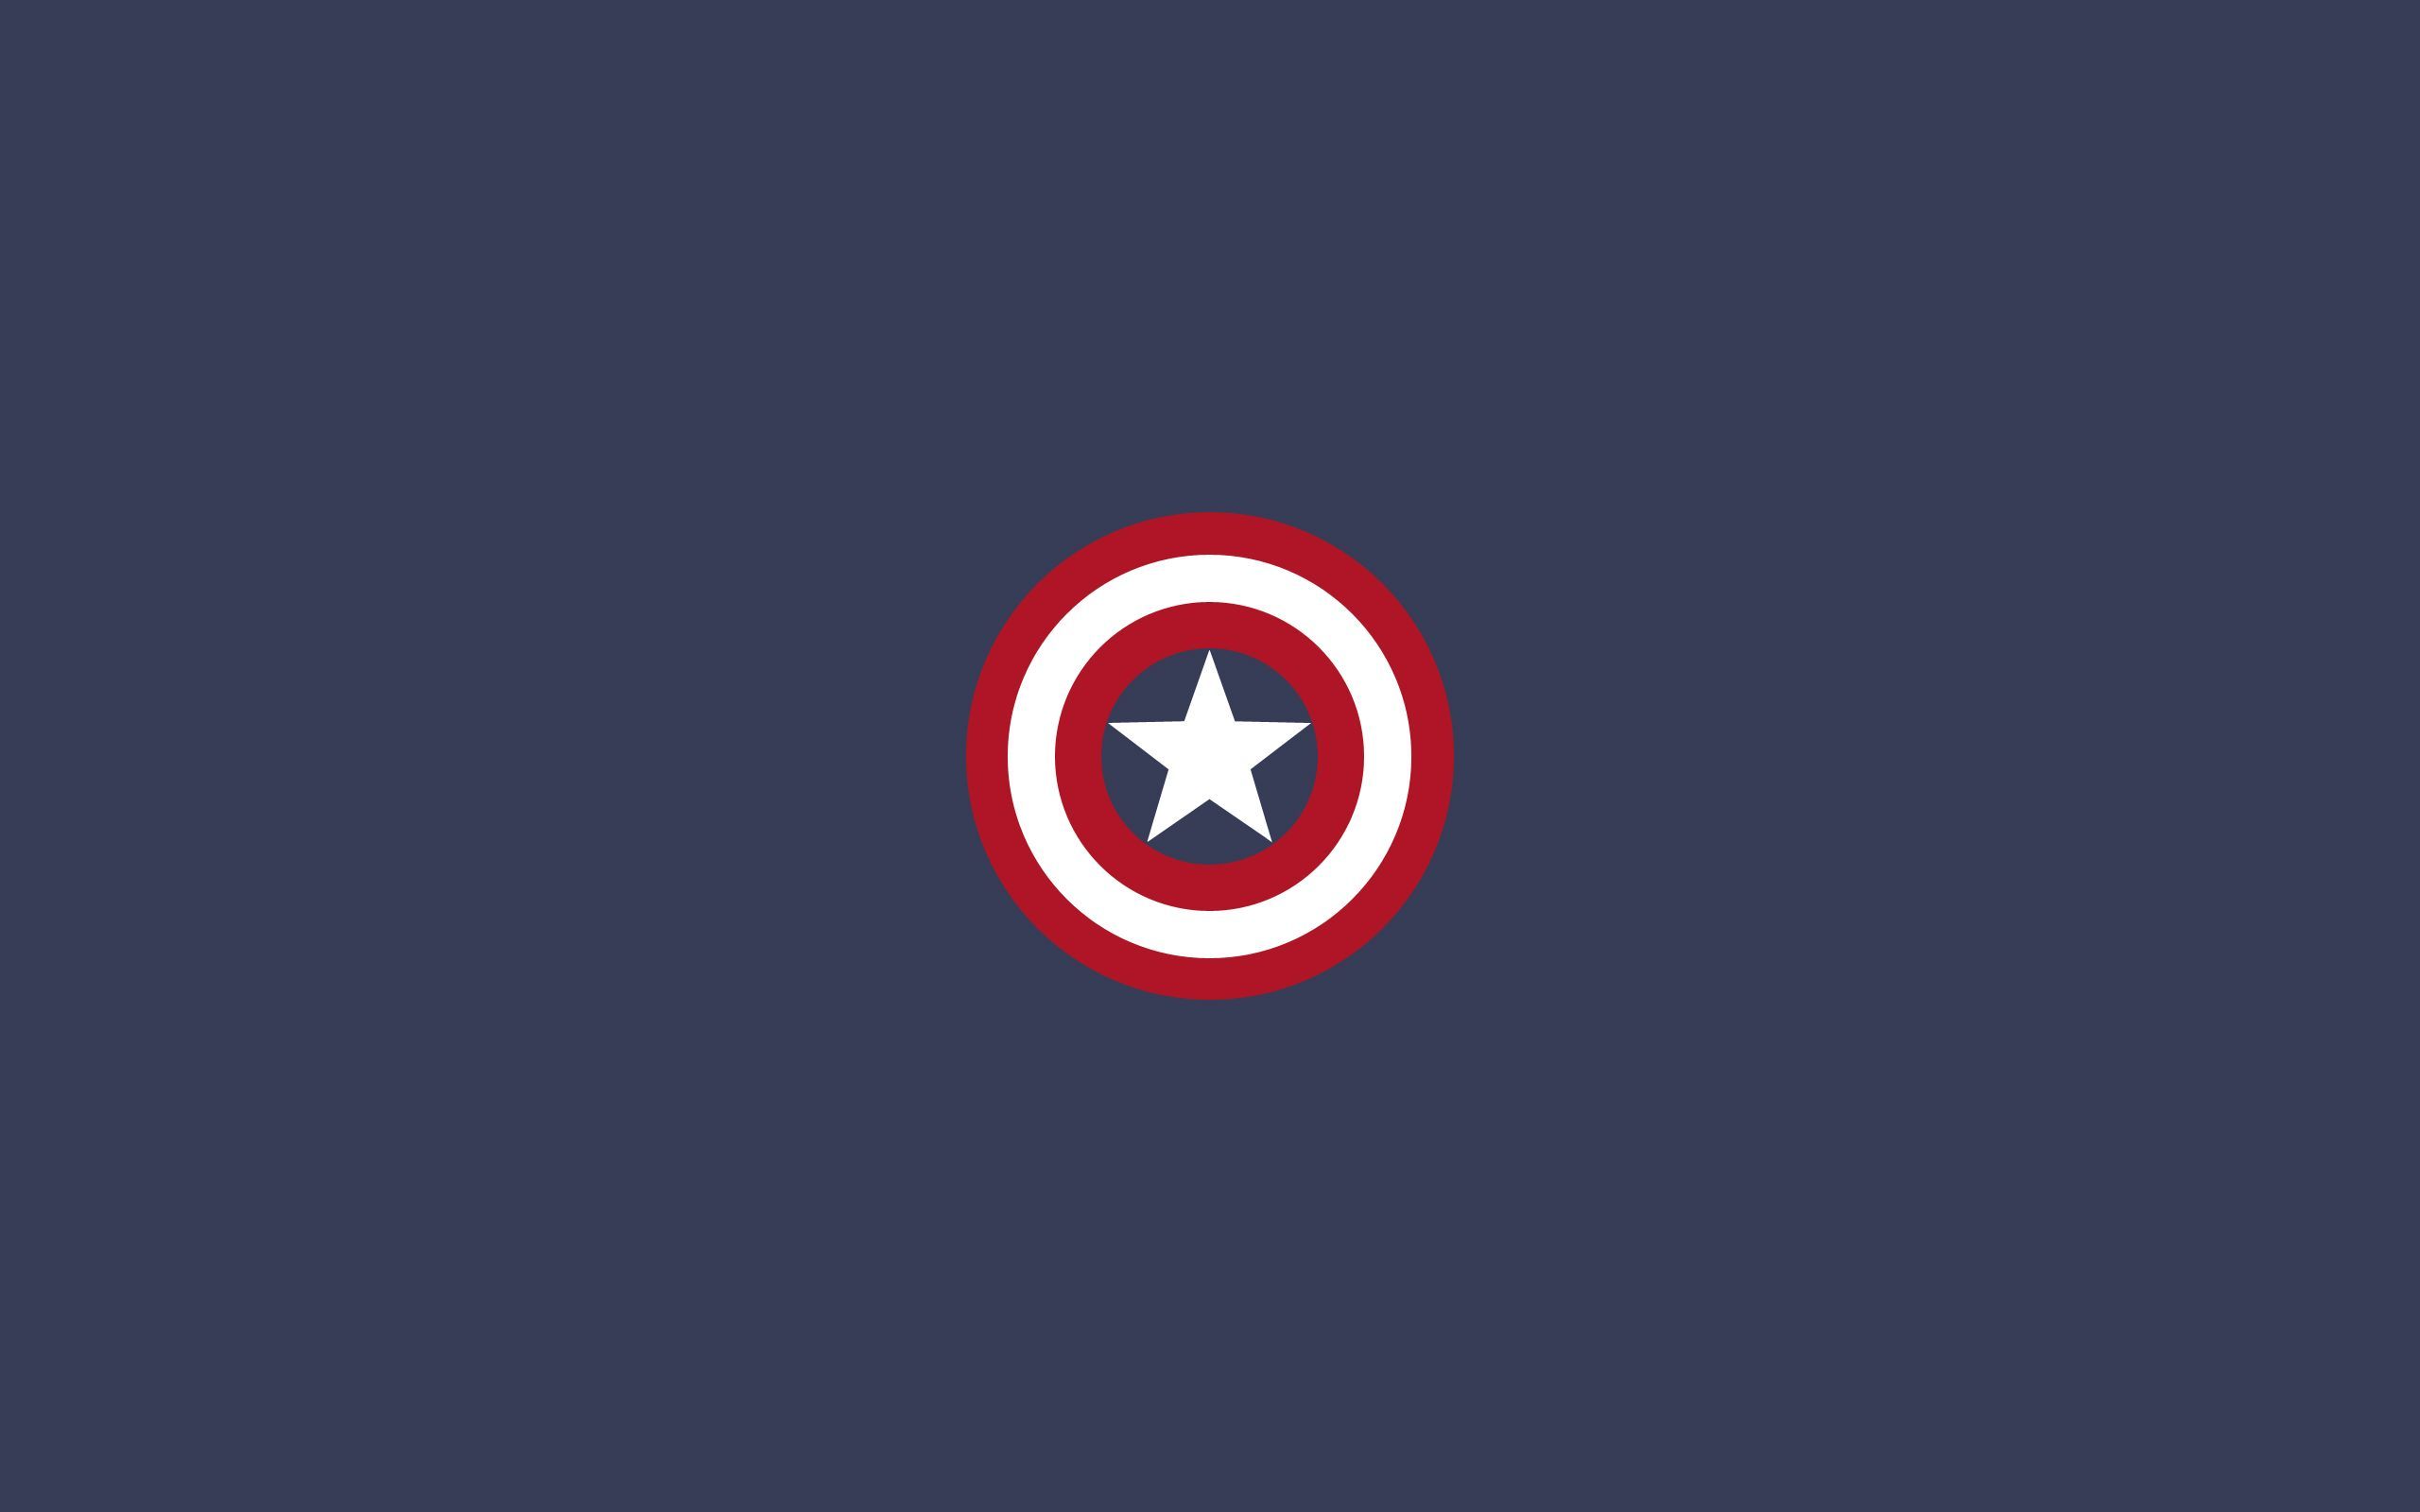 Captain America shield wallpaper 19334 2560x1600